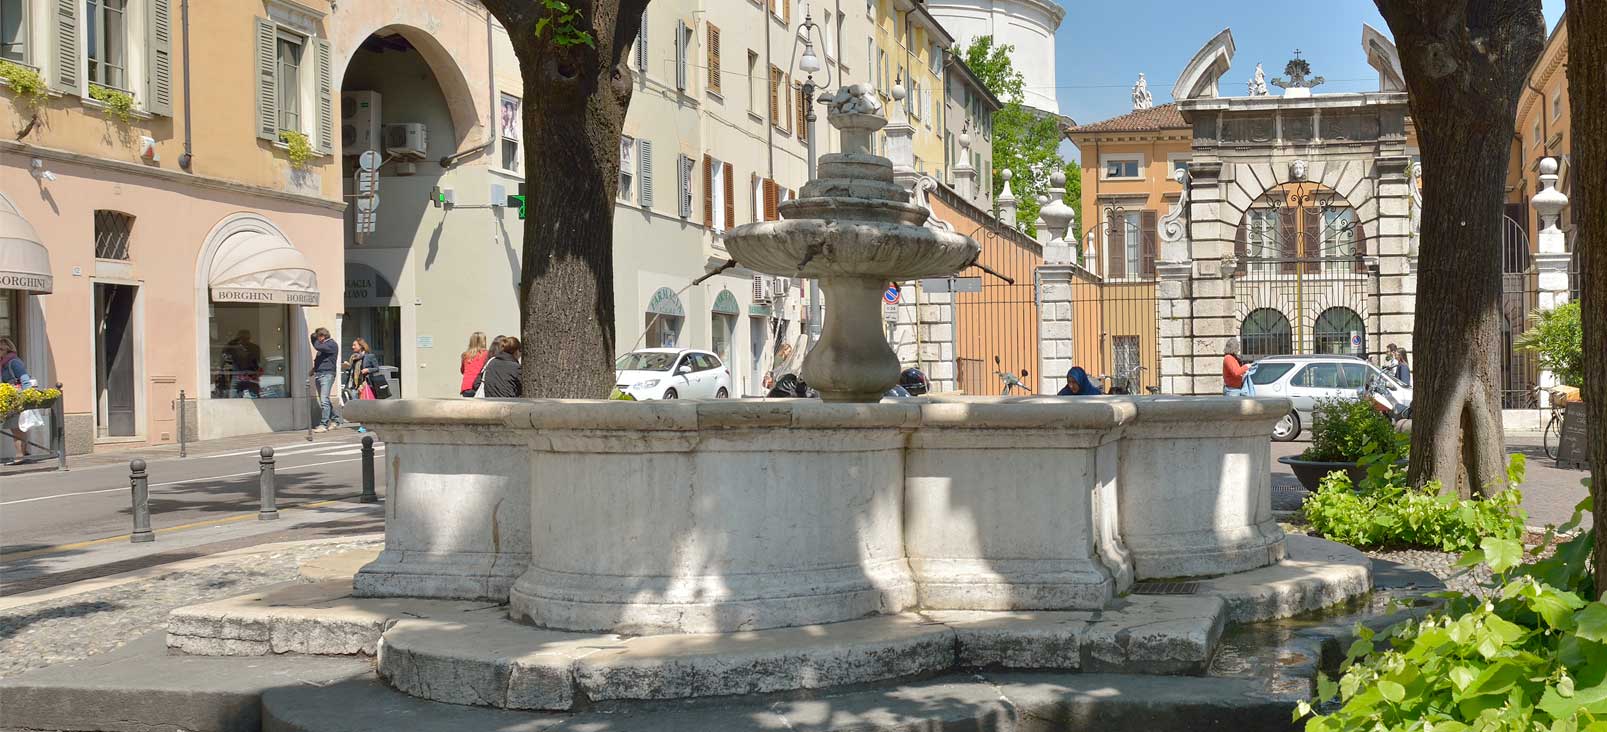 Restoration of Piazza Vescovado Fountain